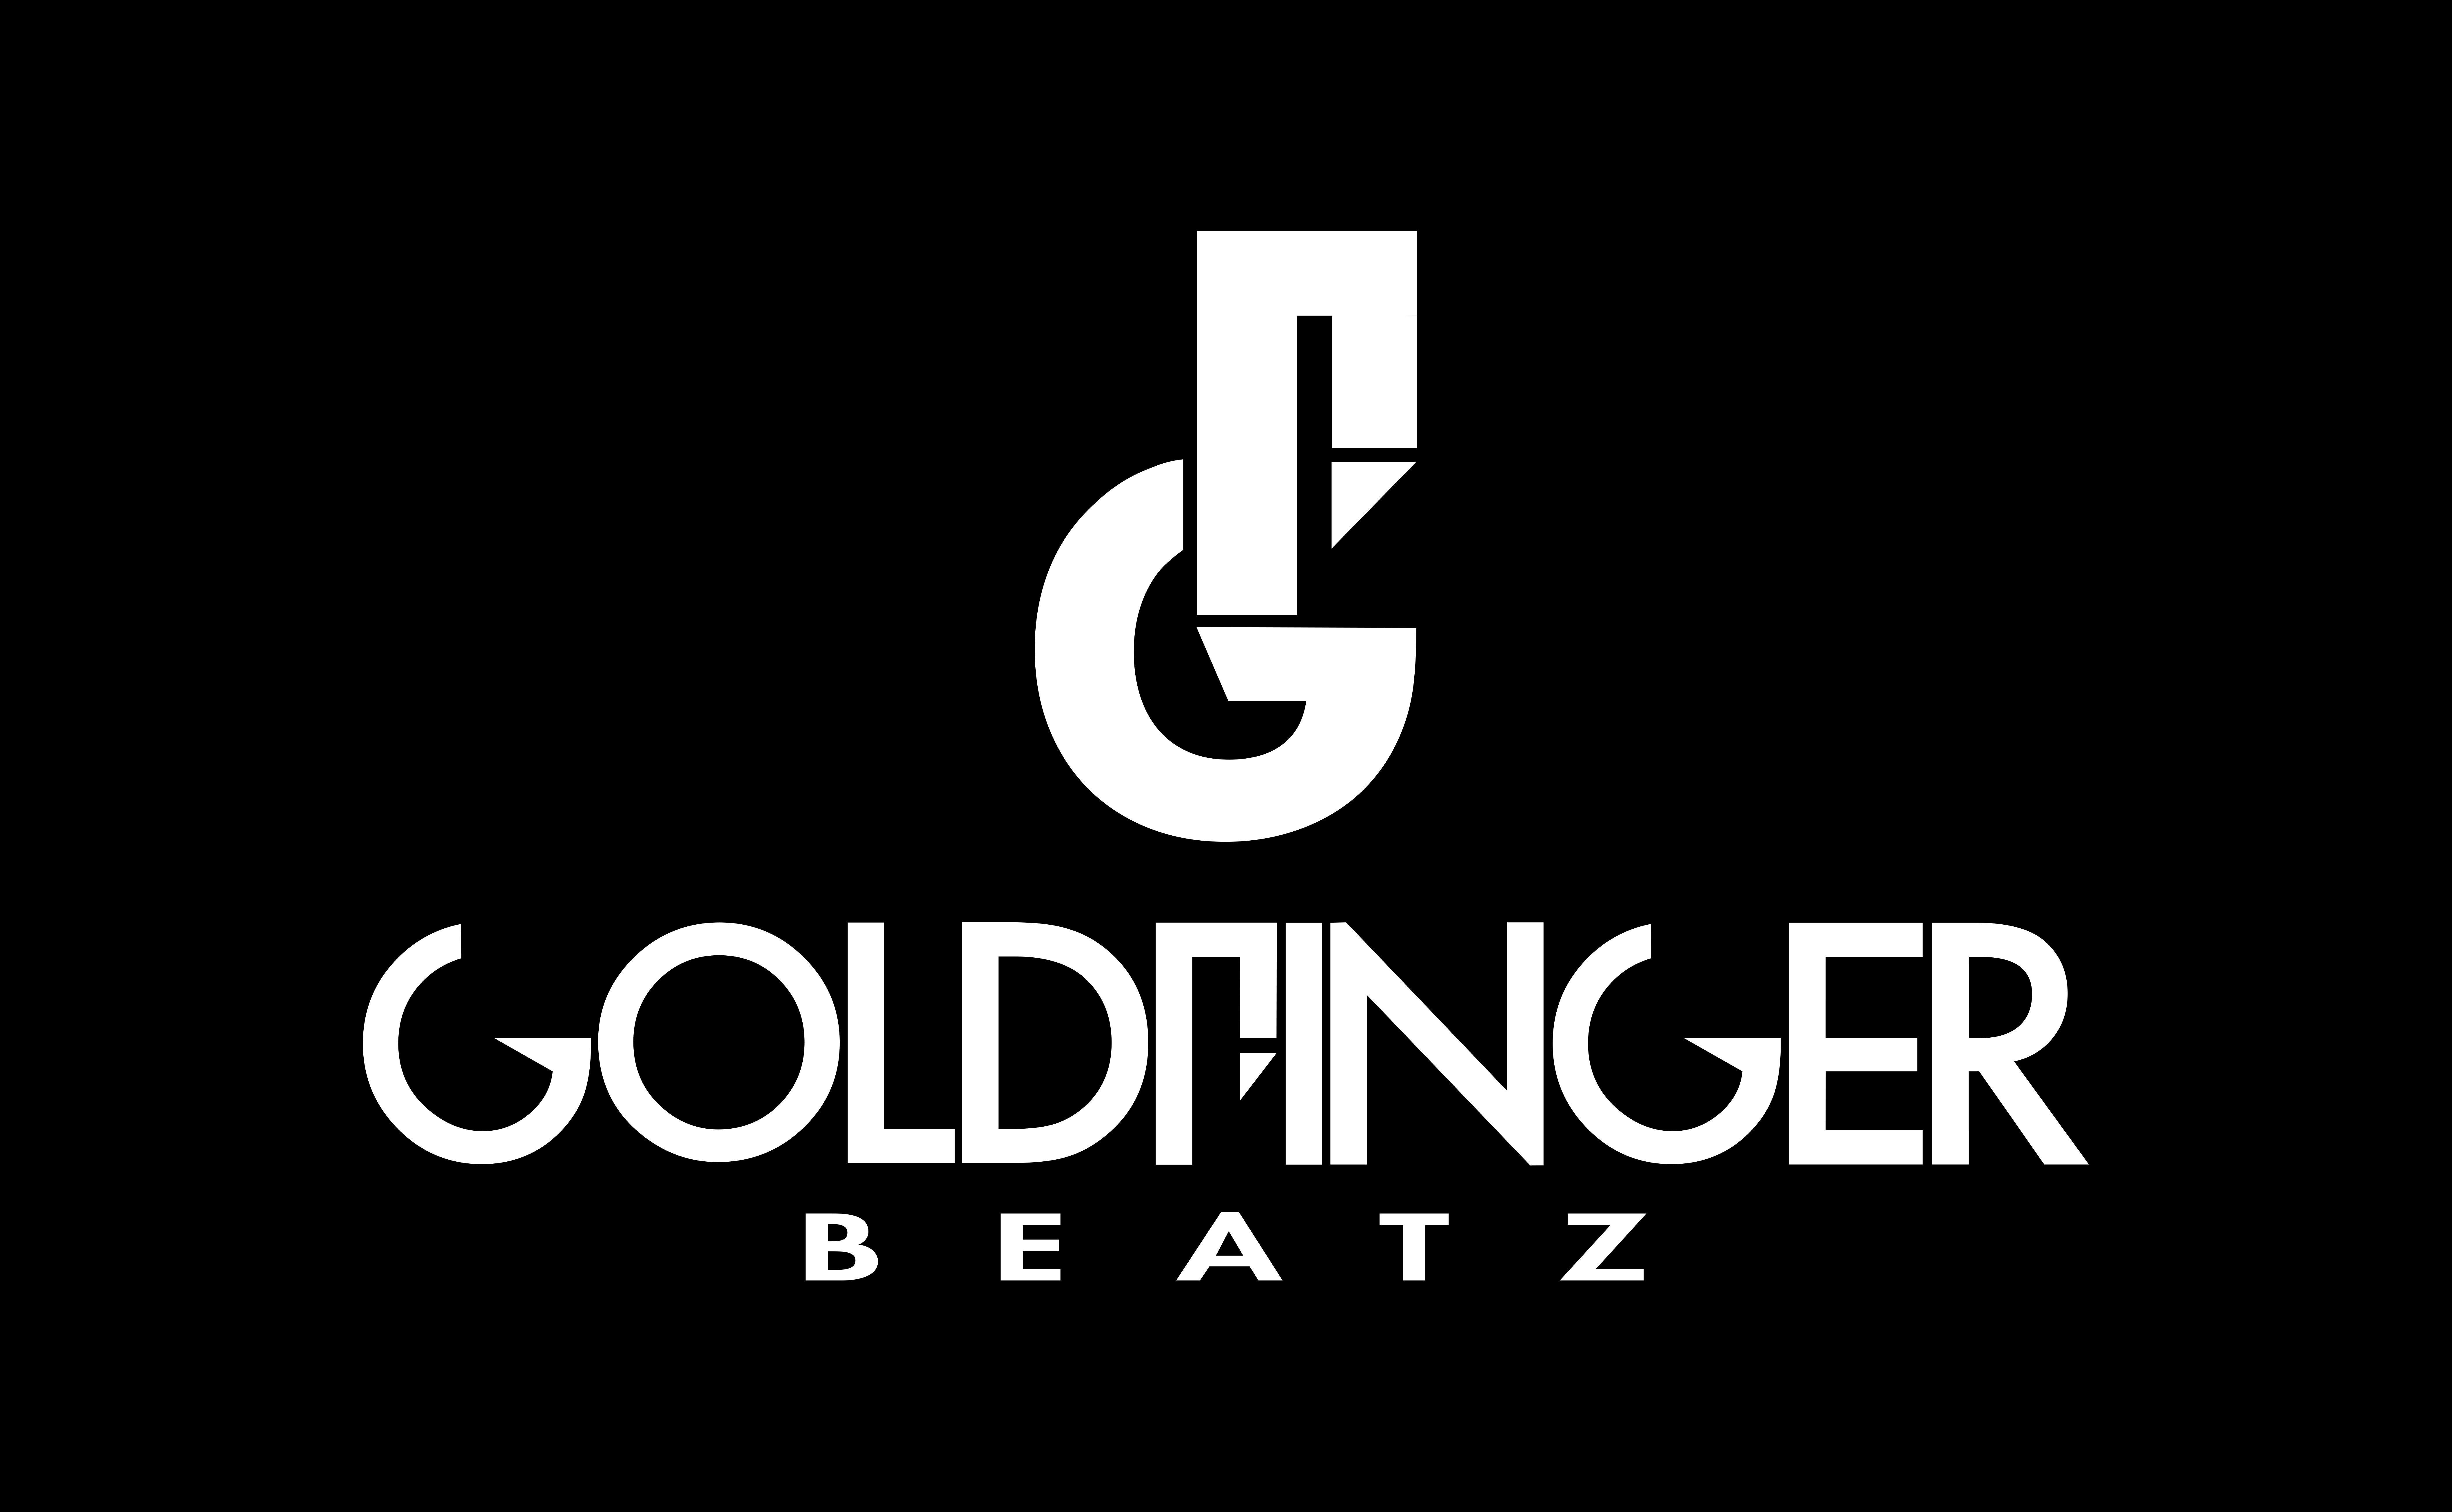 Beatz Logo - Goldfinger Beatz / Flat #goldfinger #beatz #sls